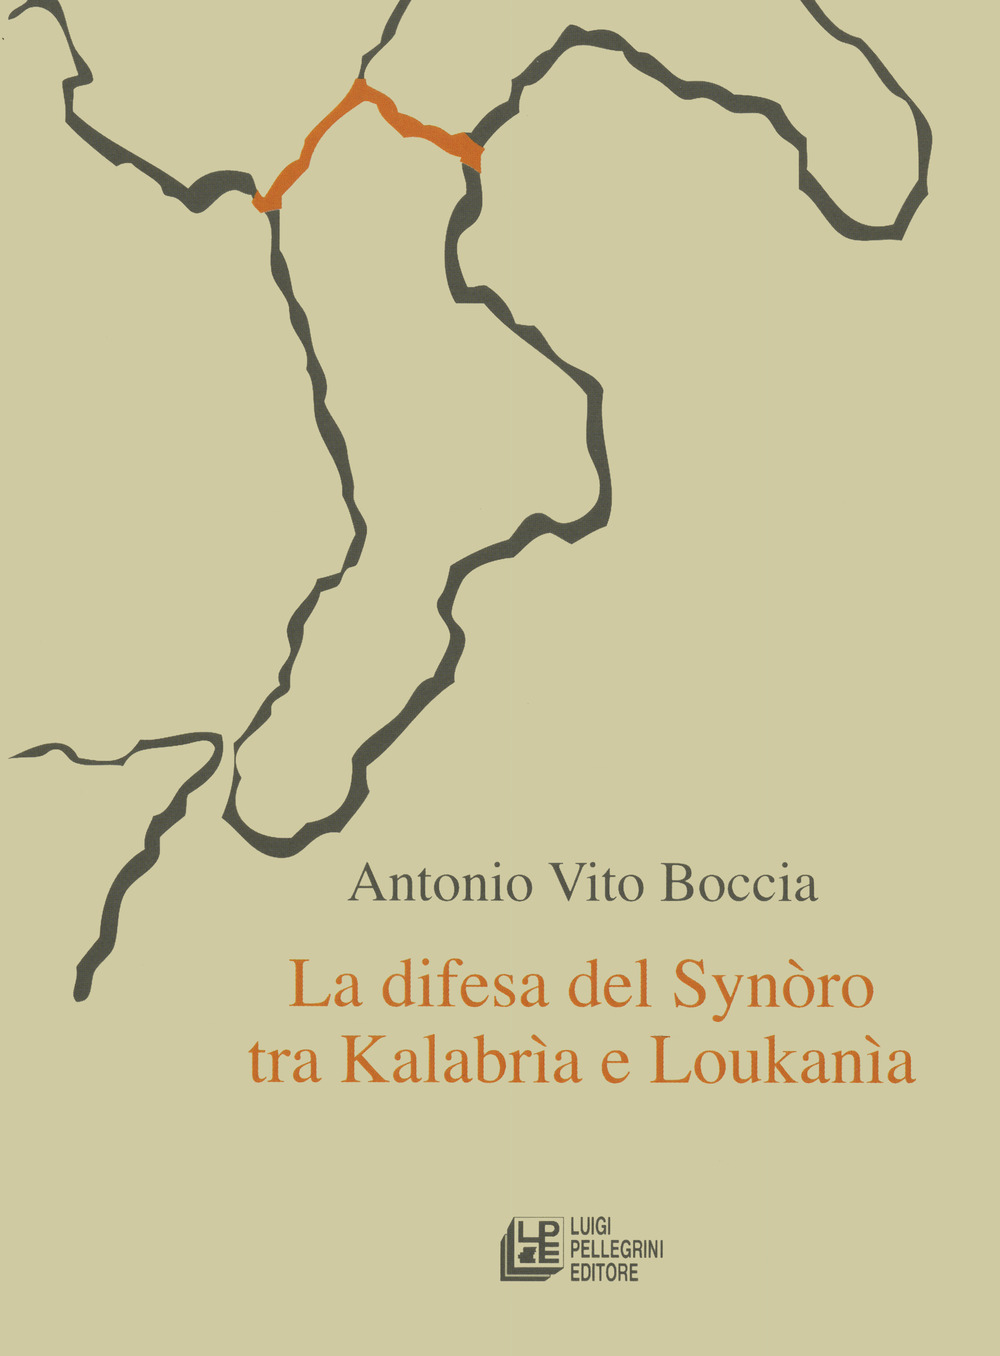 La difesa del synoro tra Kalabria e Loukania